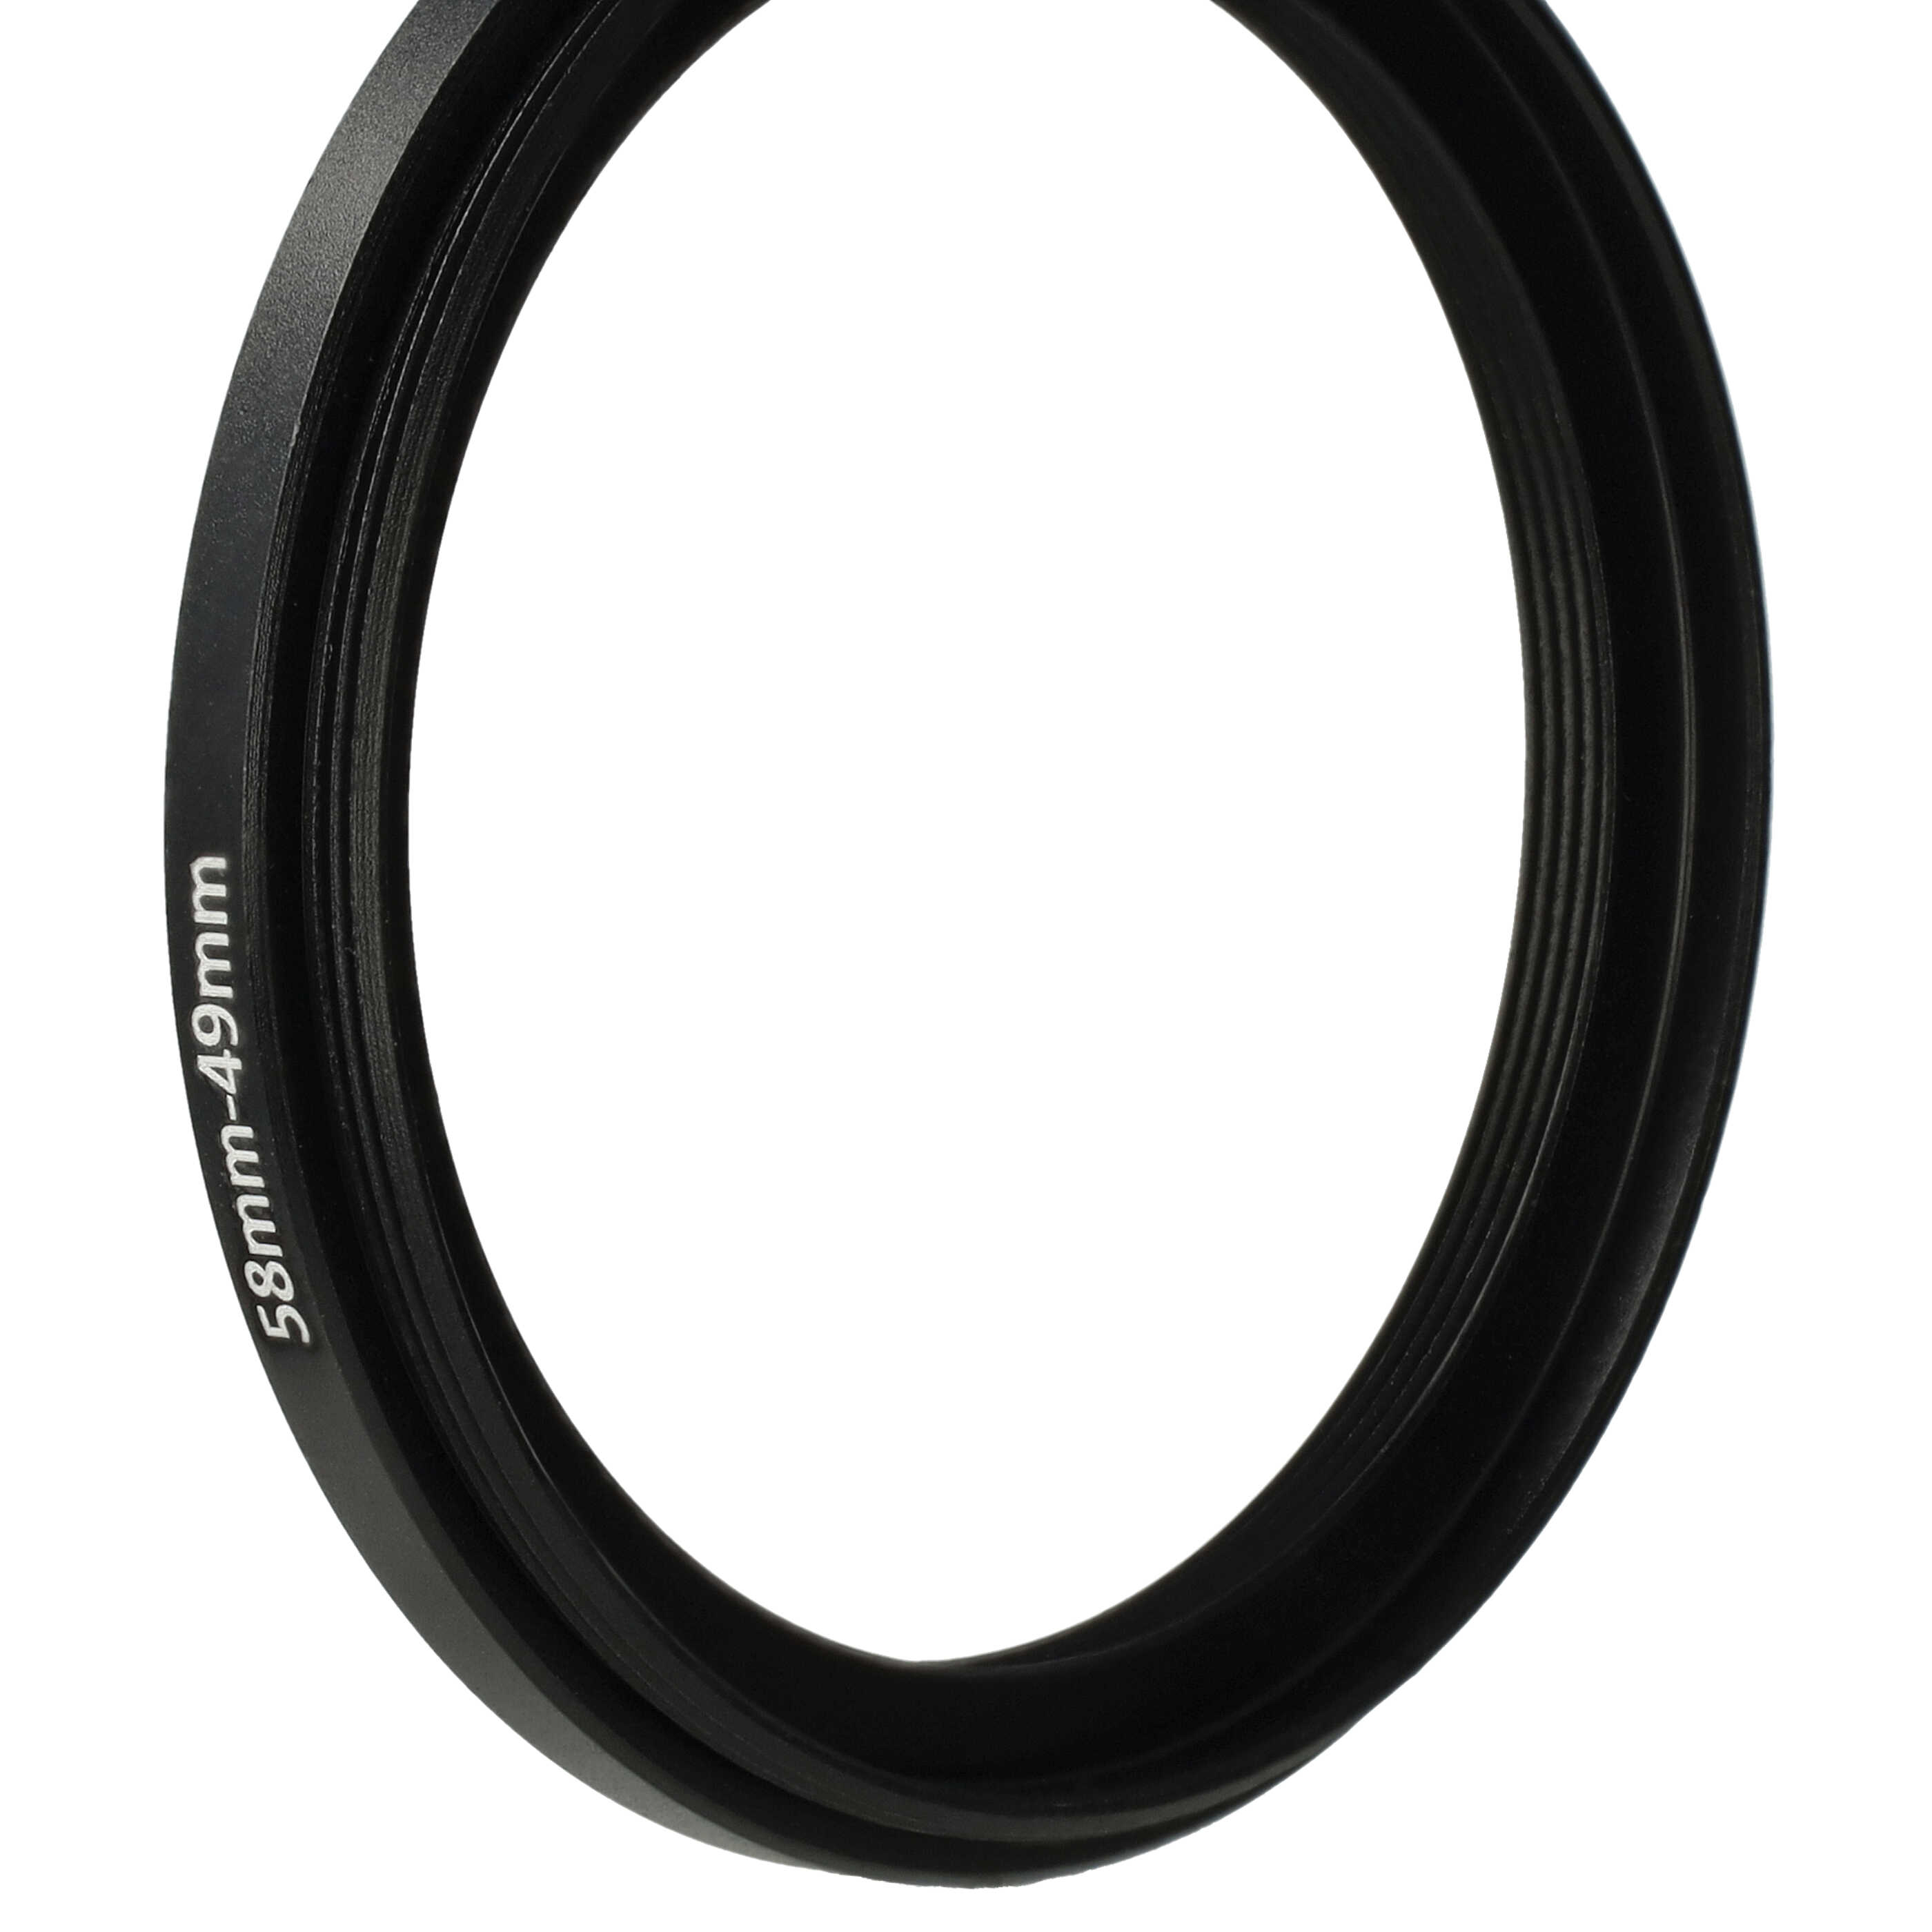 Anillo adaptador Step Down de 58 mm a 49 mm para objetivo de la cámara - Adaptador de filtro, metal, negro